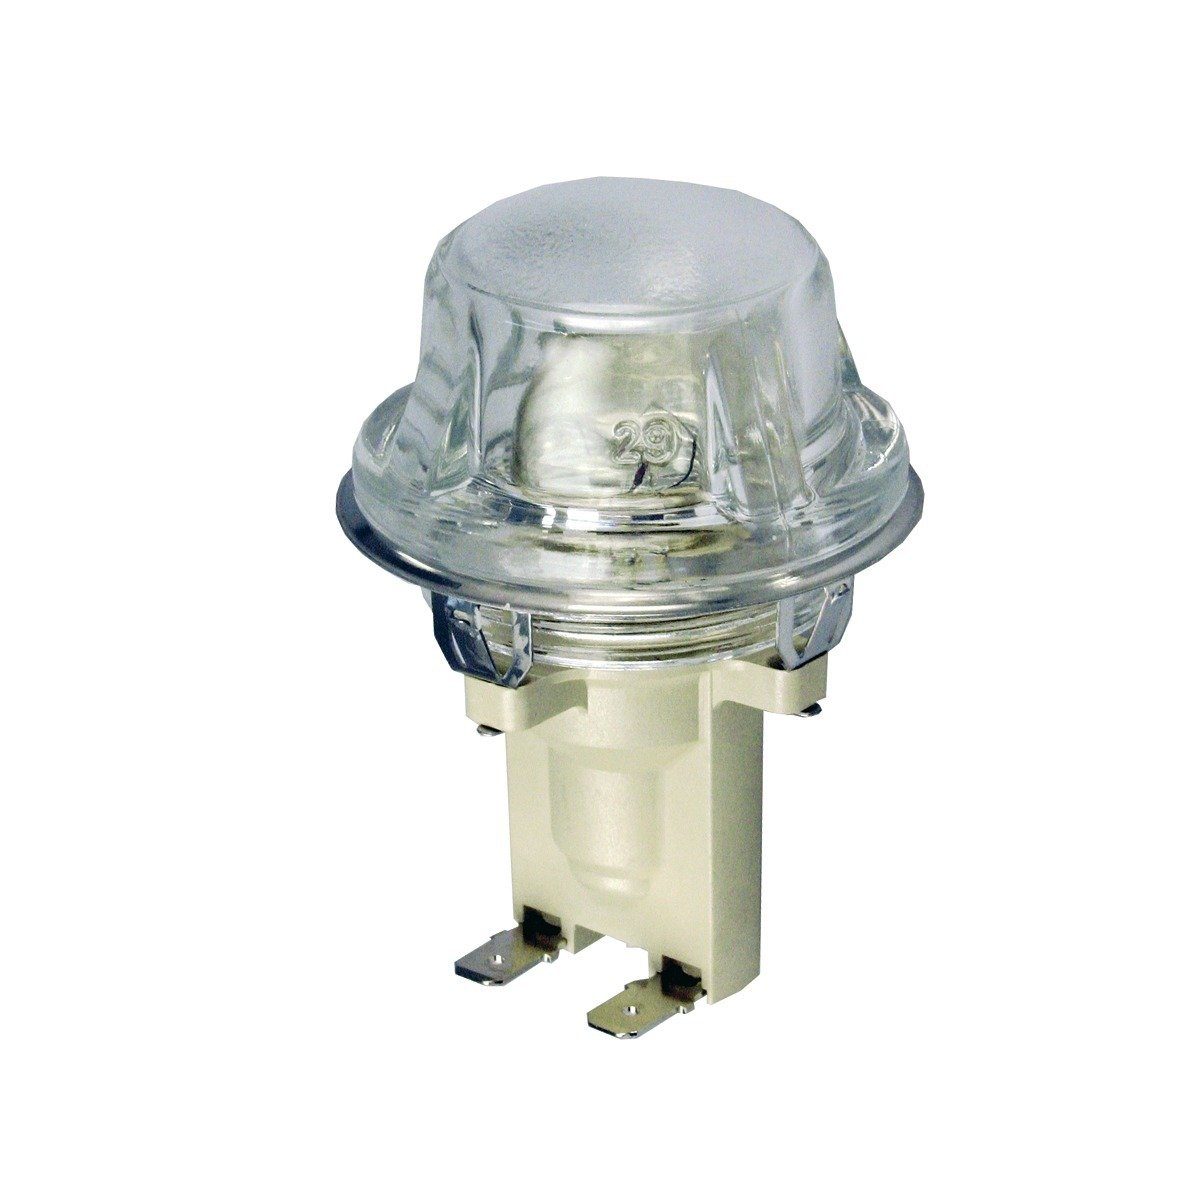 Für Herd / easyPART Lampeneinheit Electrolux Backofen Backofen Montagezubehör wie 387937693/1 Glühbirne,